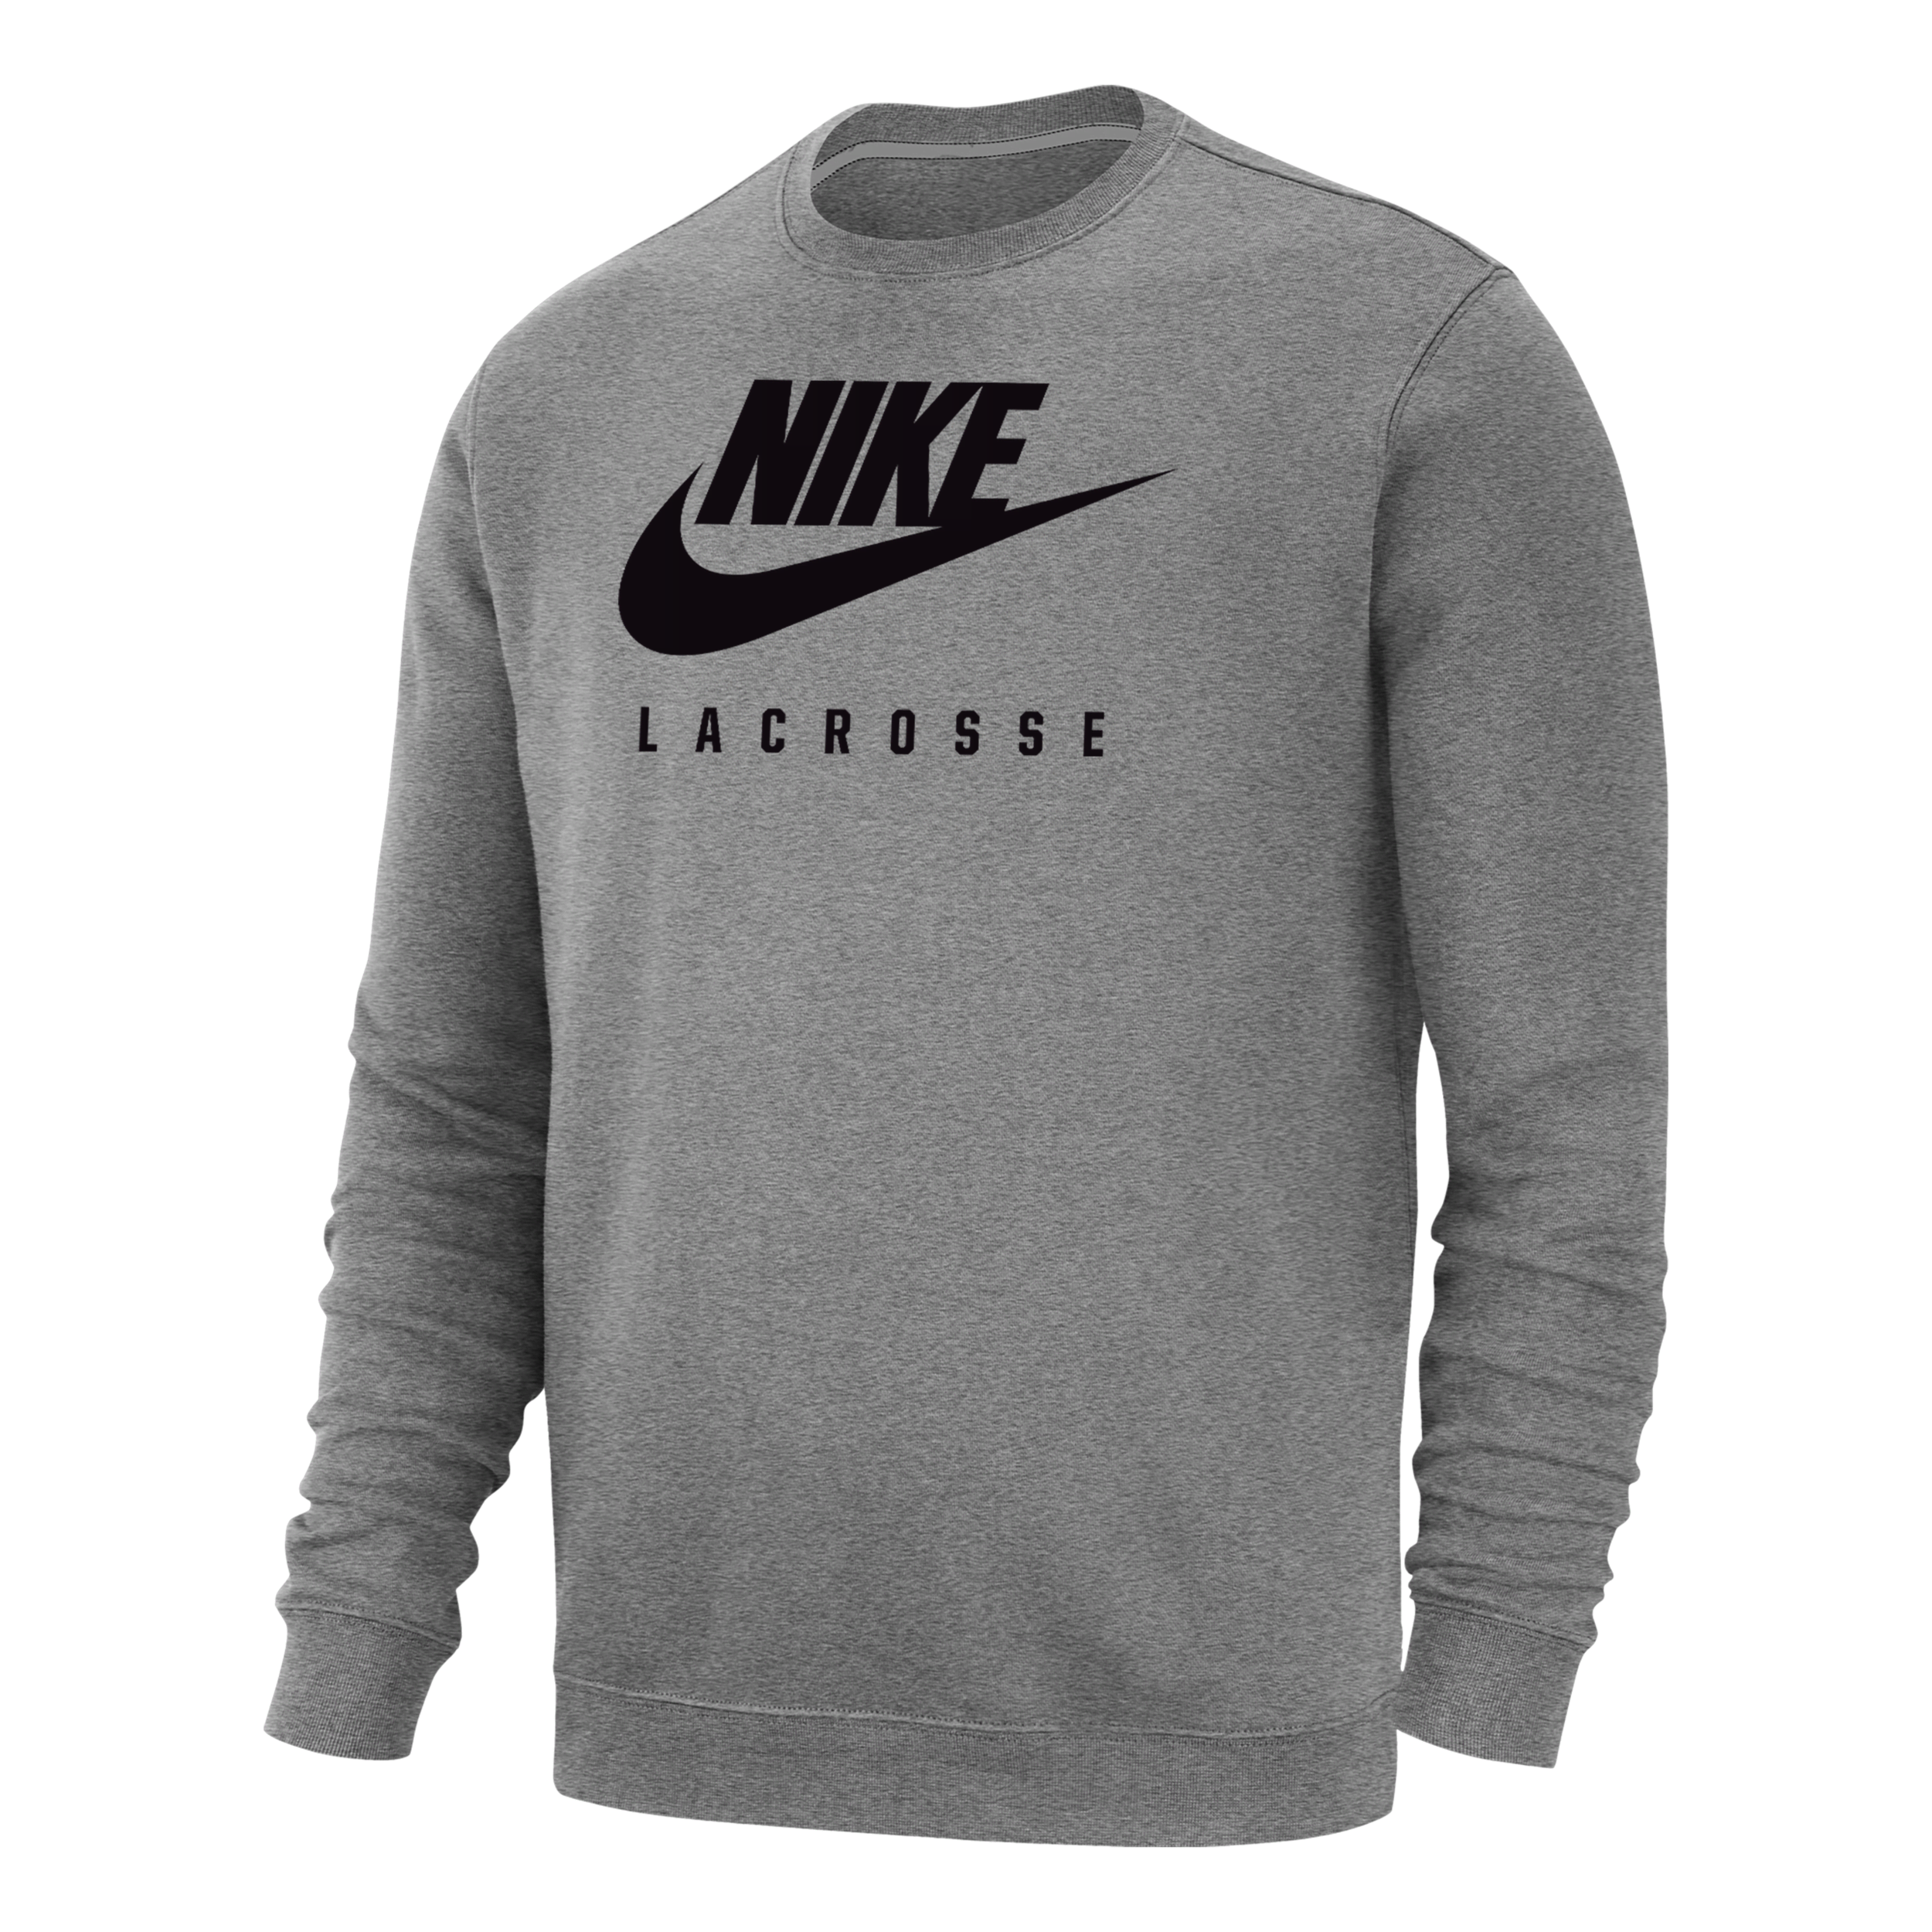 Nike Men's Swoosh Lacrosse Crew-neck Sweatshirt In Grey